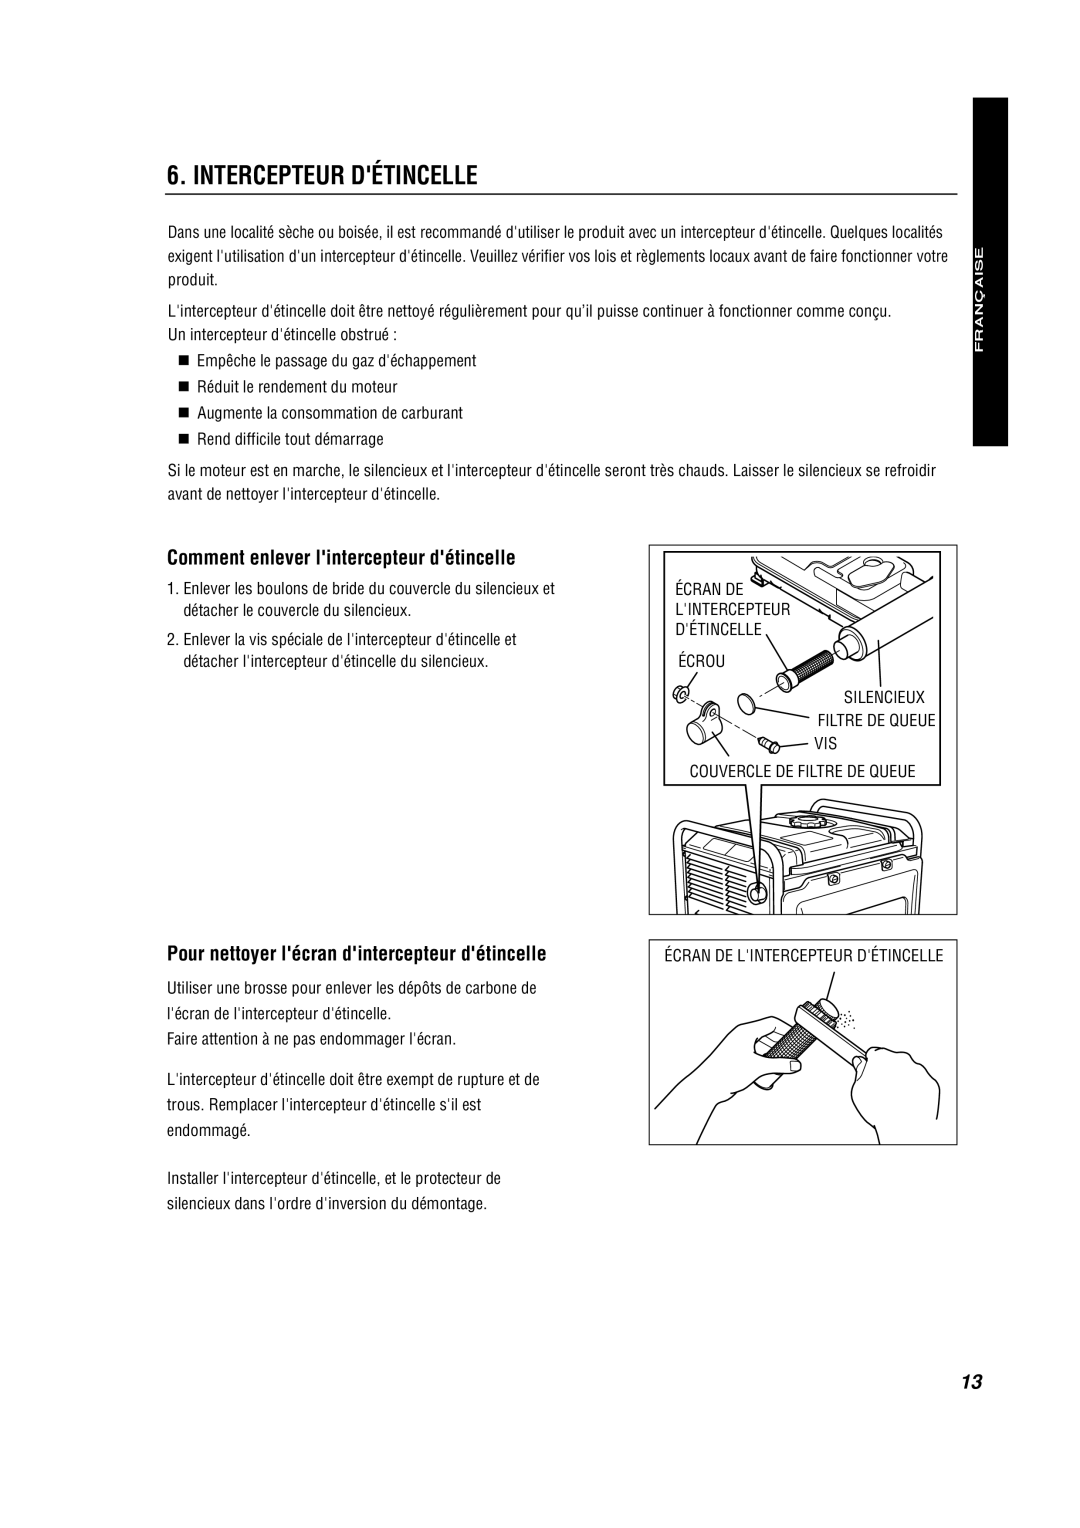 Subaru RG3200IS, RG4300IS, RG2800IS Intercepteur Détincelle, Comment enlever lintercepteur détincelle, Française, Español 